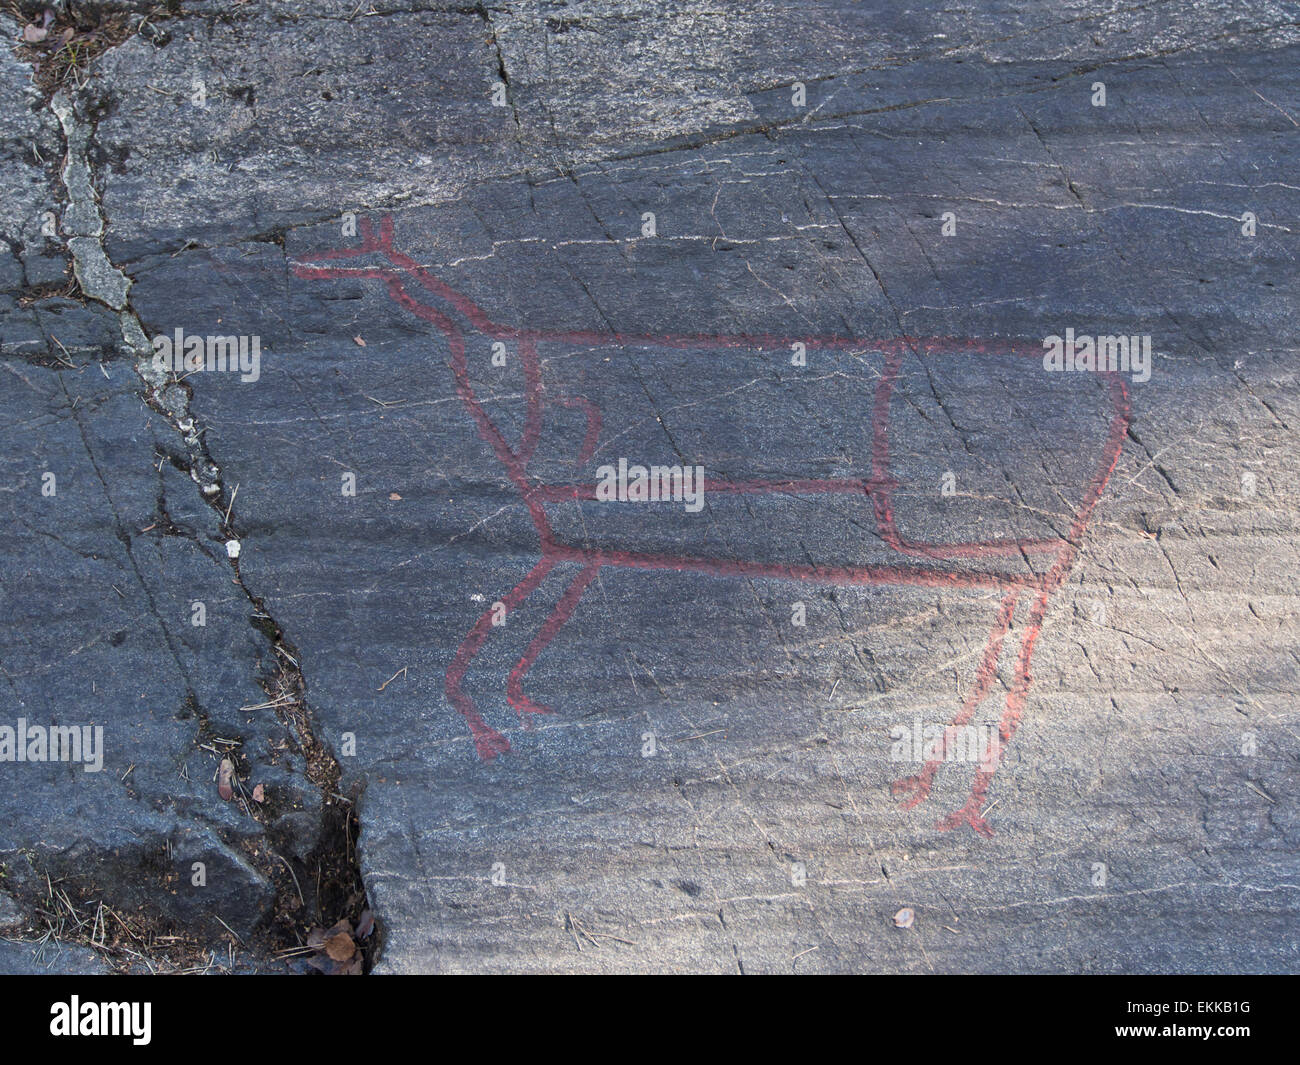 Norwegische Felszeichnungen oder Felsgravuren, verstärkt mit roter Farbe, mit Elch oder Hirsch, Oslo Norwegen Stockfoto